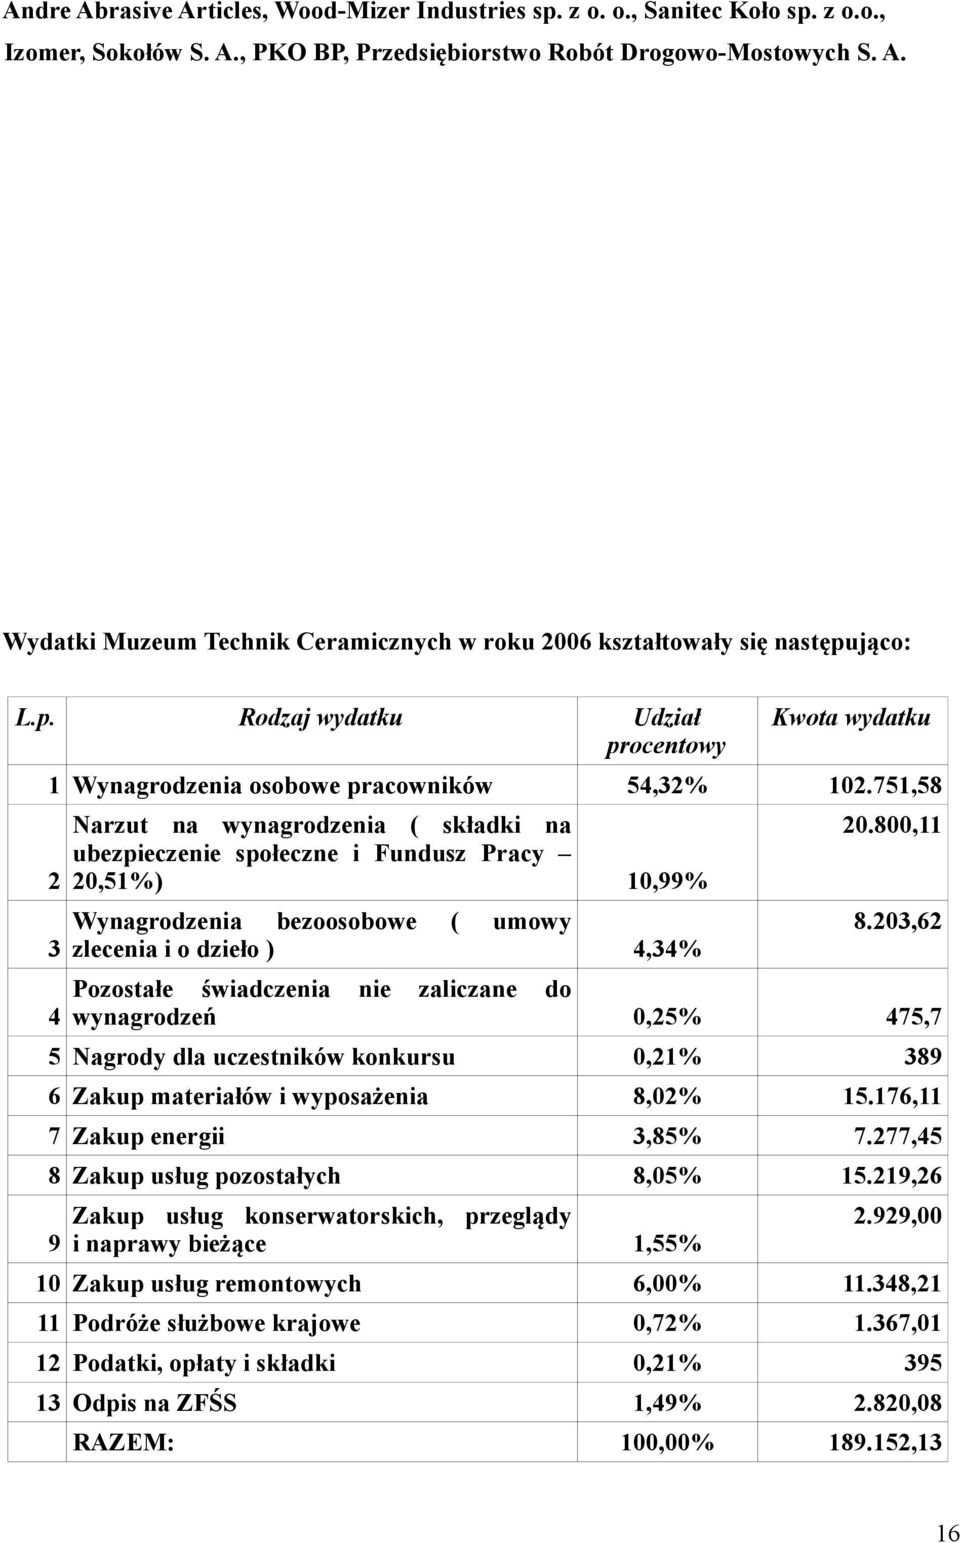 751,58 2 3 4 Narzut na wynagrodzenia ( składki na ubezpieczenie społeczne i Fundusz Pracy 20,51%) 10,99% Wynagrodzenia bezoosobowe ( umowy zlecenia i o dzieło ) 4,34% 20.800,11 8.